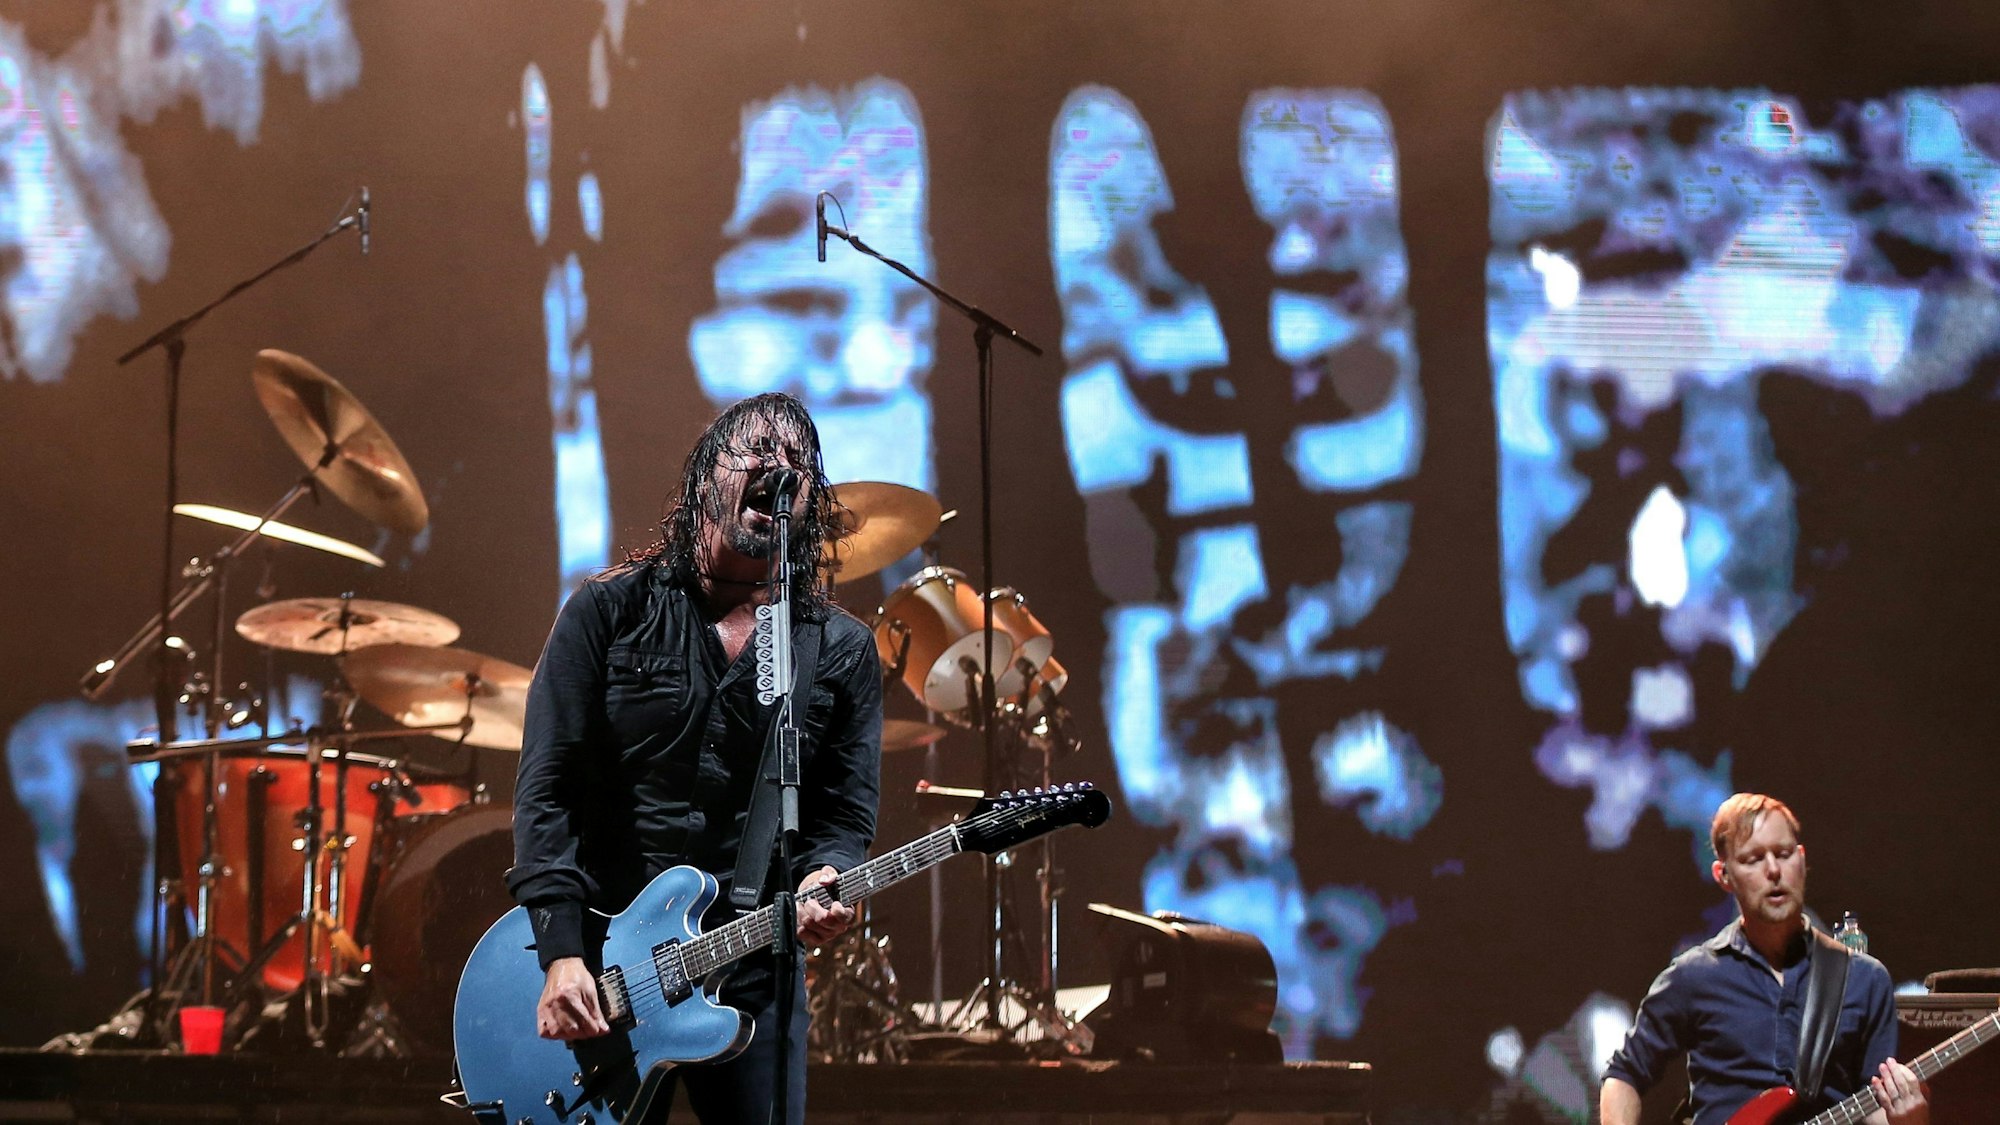 Die Foo Fighters um Frontmann Dave Grohl haben nach dem tragischen Tod von Taylor Hawkins ihren neuen Drummer bekannt gegeben: Künftig sitzt Josh Freese am Schlagzeug. (Archivbild)dpa